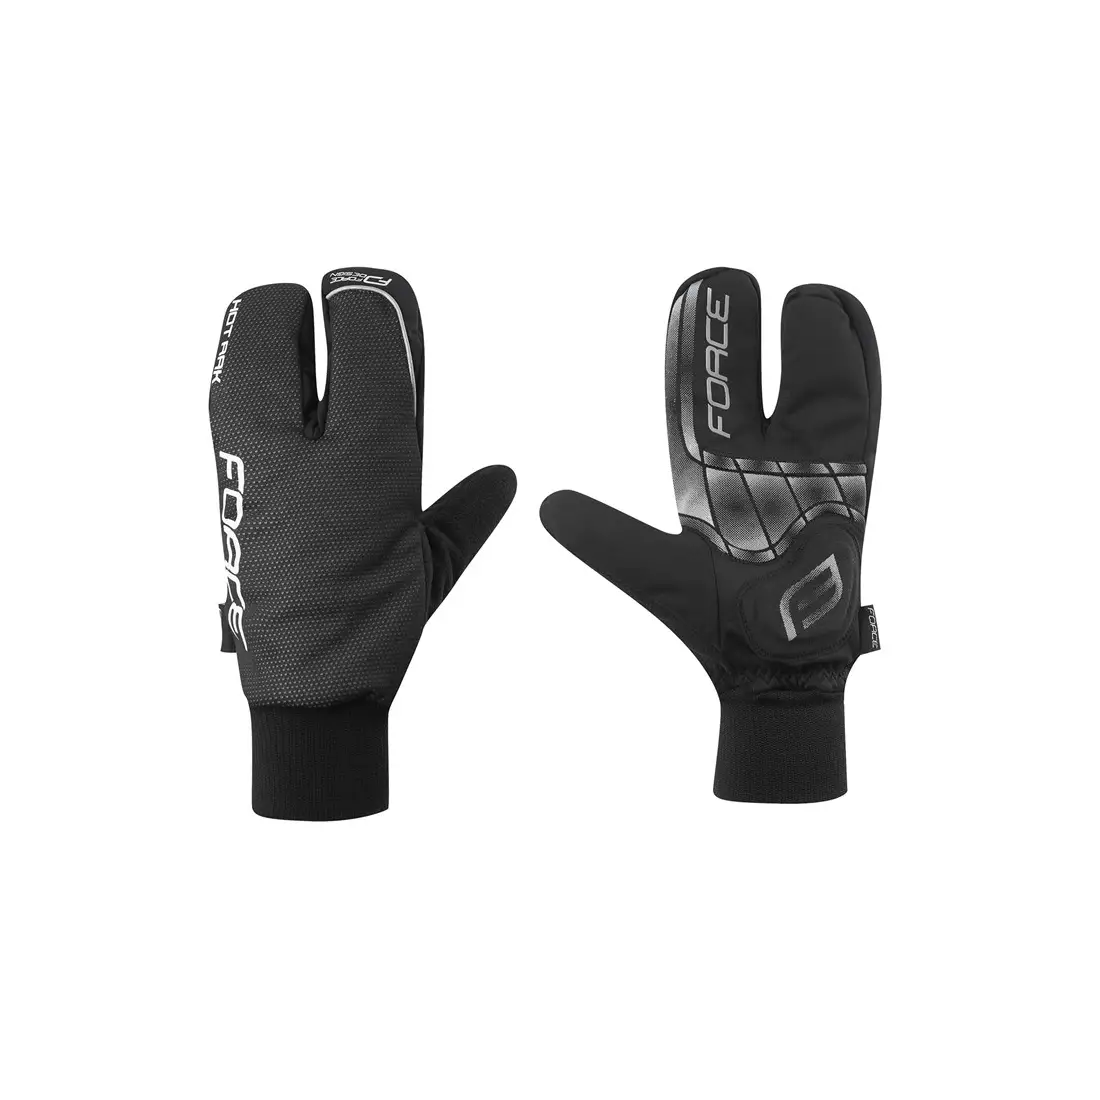 FORCE 90422 HOT RAK 3 zimné cyklistické rukavice, čierne